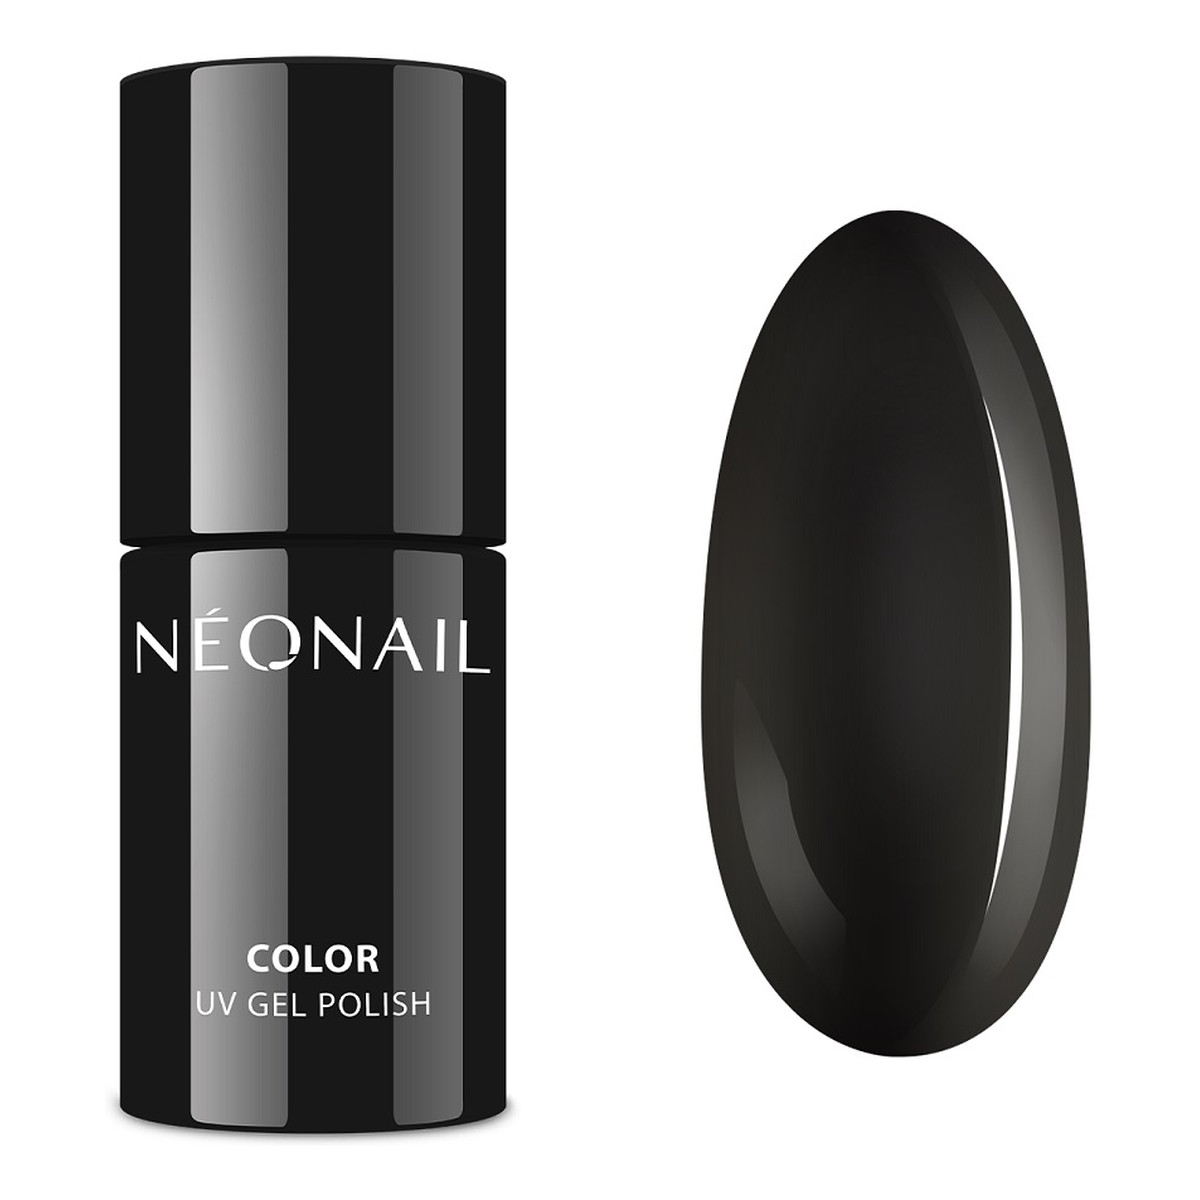 NeoNail Gel Polish Color Lakier Hybrydowy UV 7ml